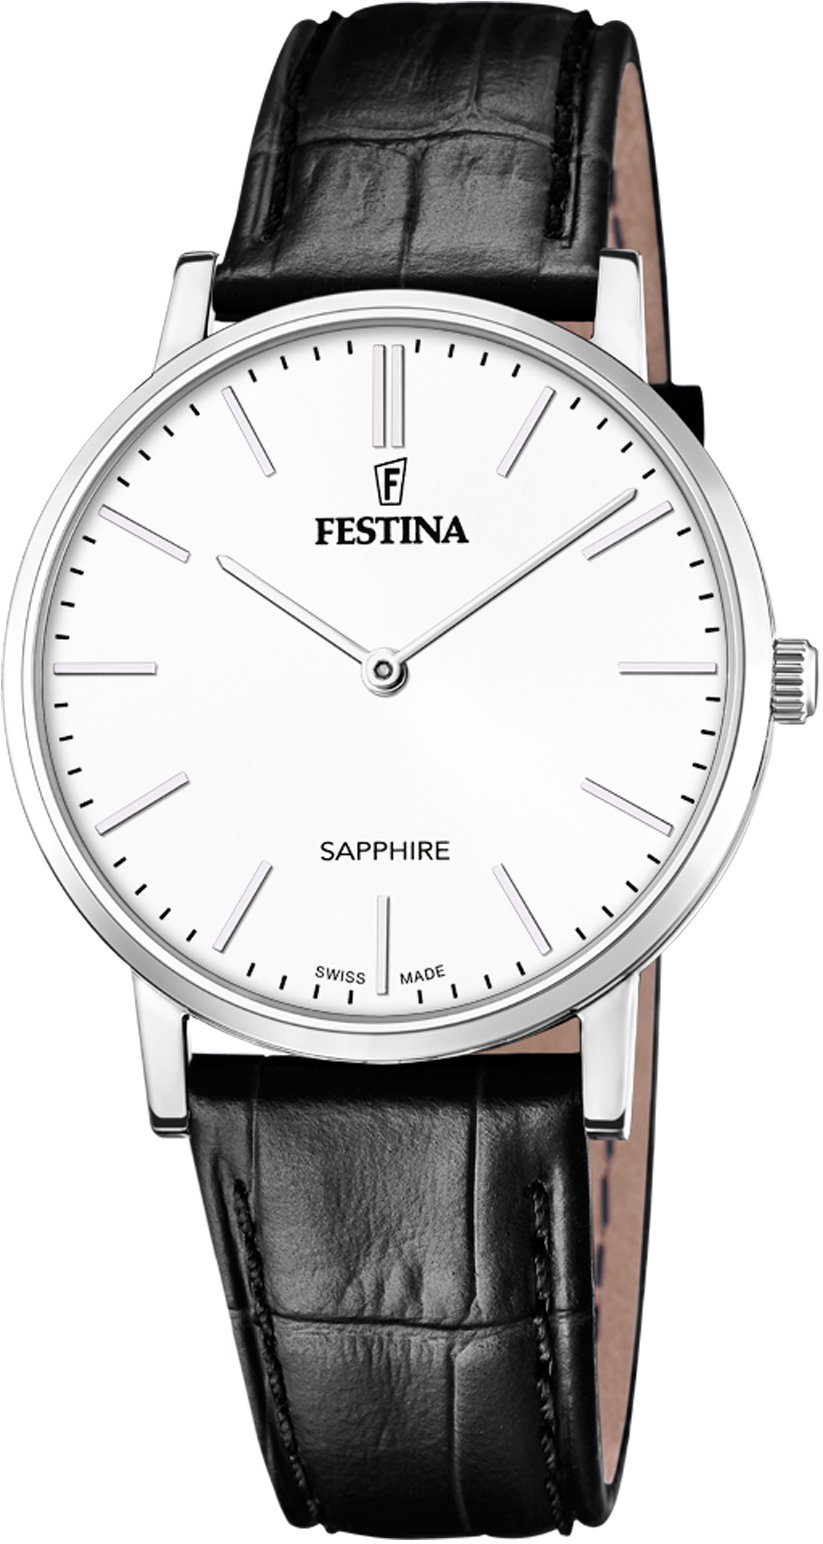 Festina Schweizer Uhr »Festina Swiss Made, F20012/1« online kaufen | OTTO